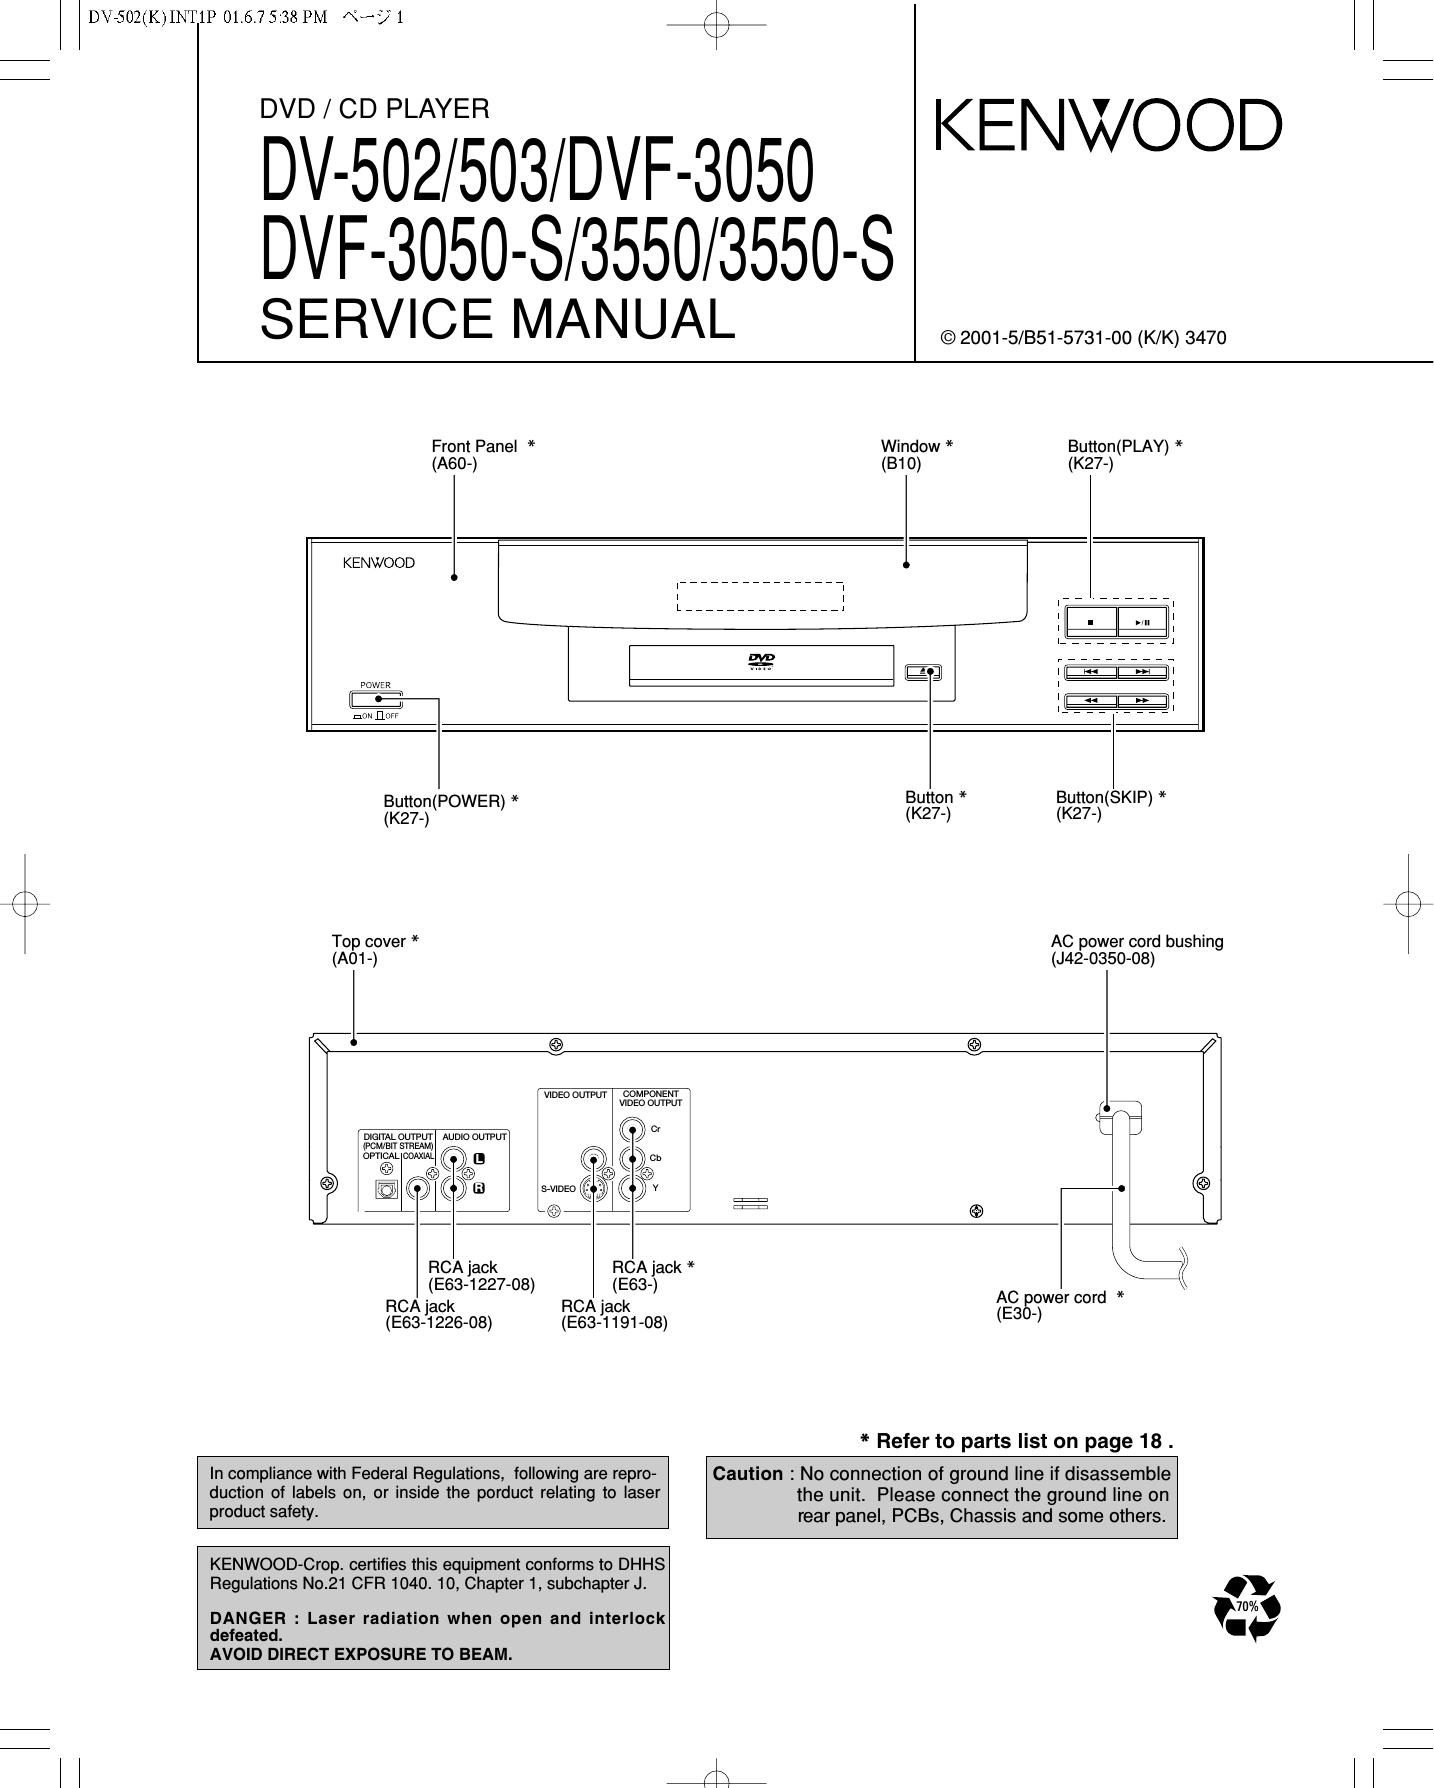 Kenwood DV 502 Service Manual